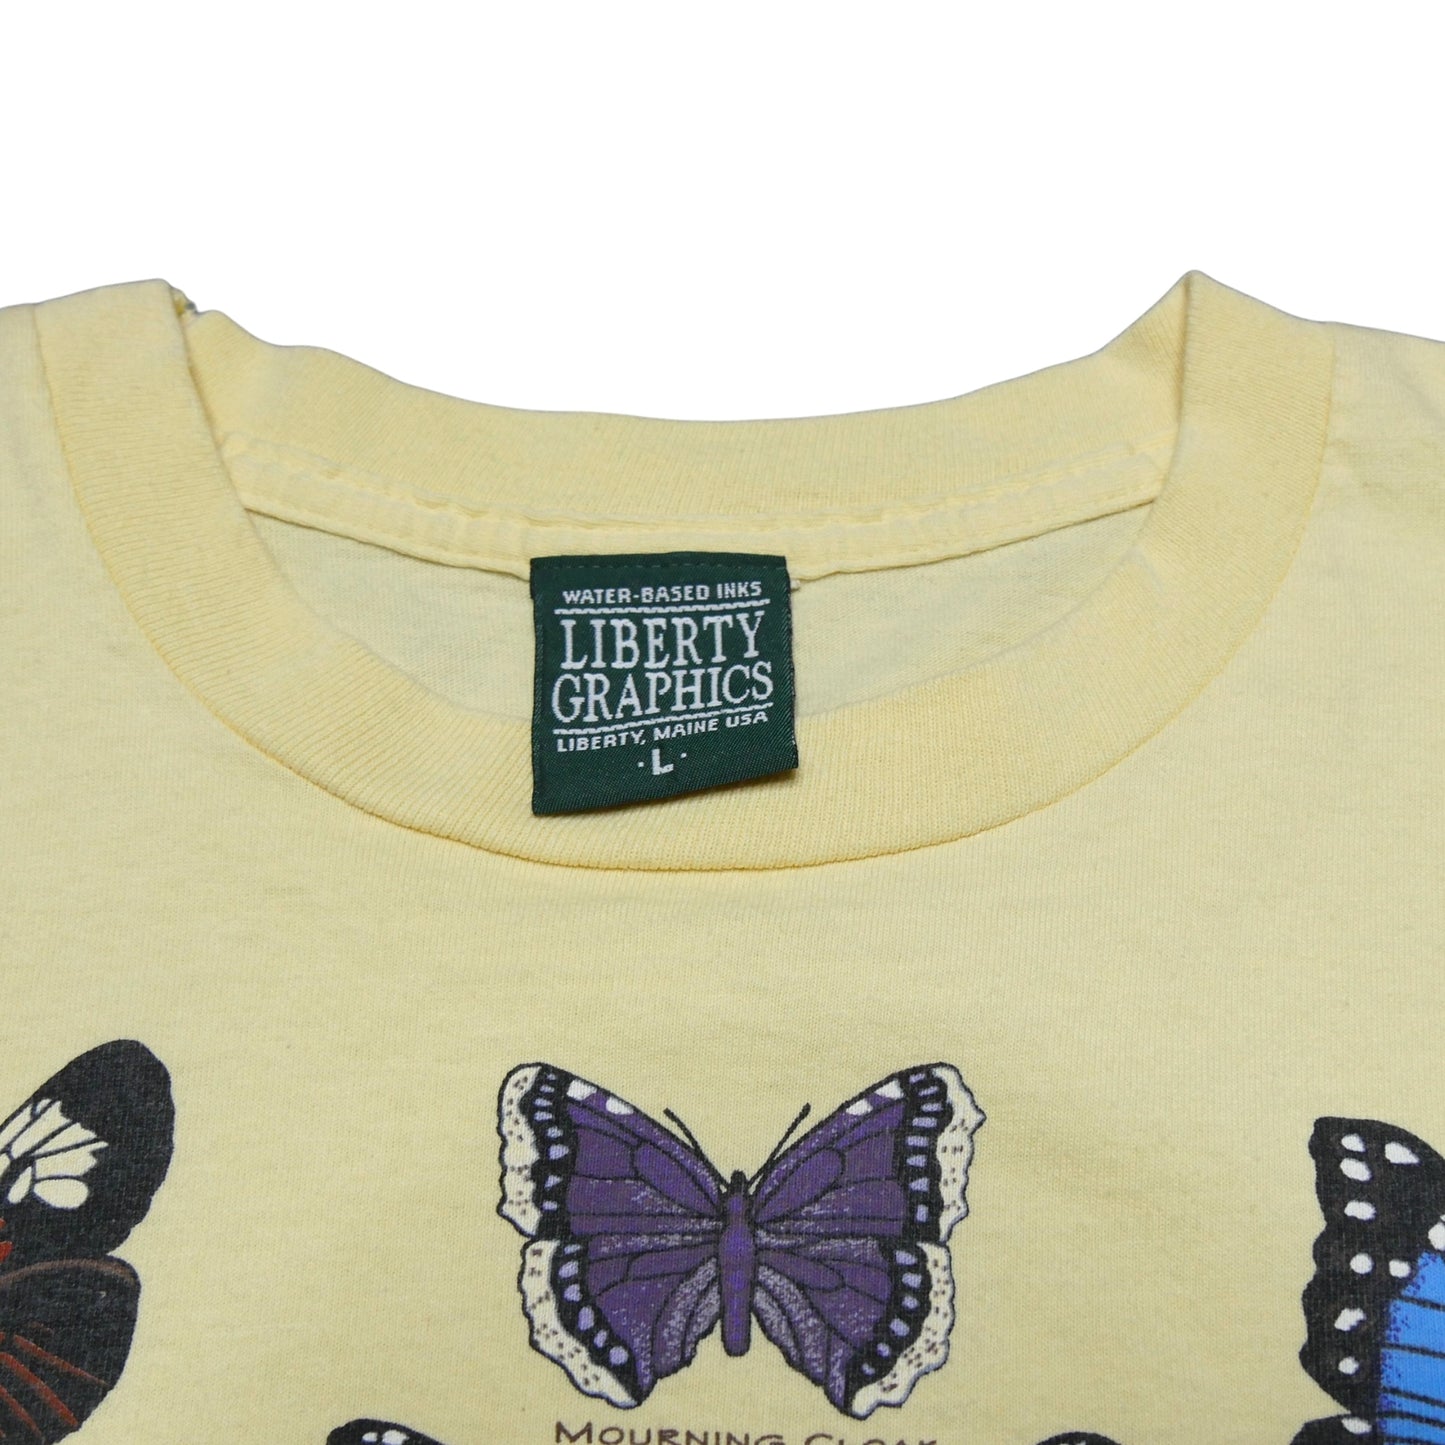 Butterflies Of The World Shirt - Large